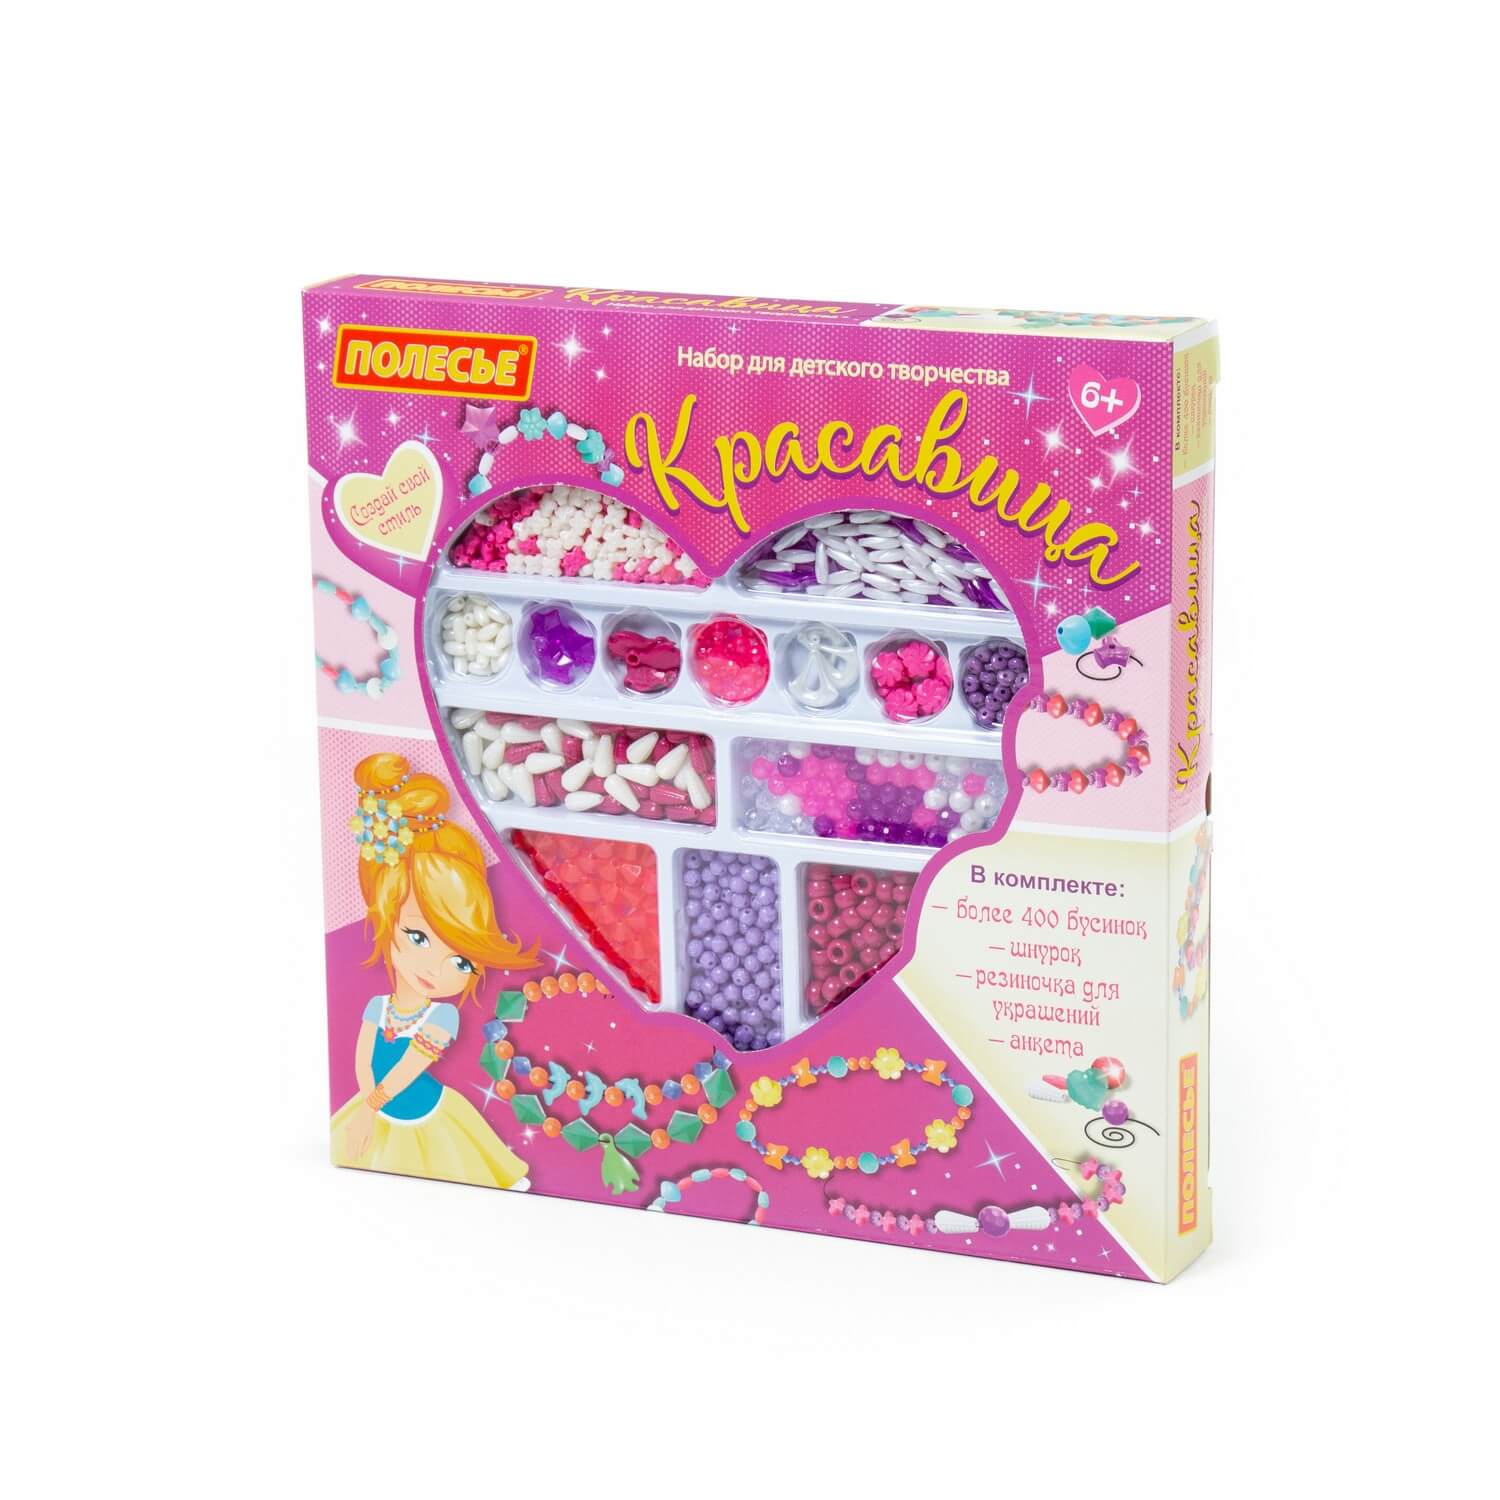 Набор для детского творчества Красавица (535 элементов) (в коробке)